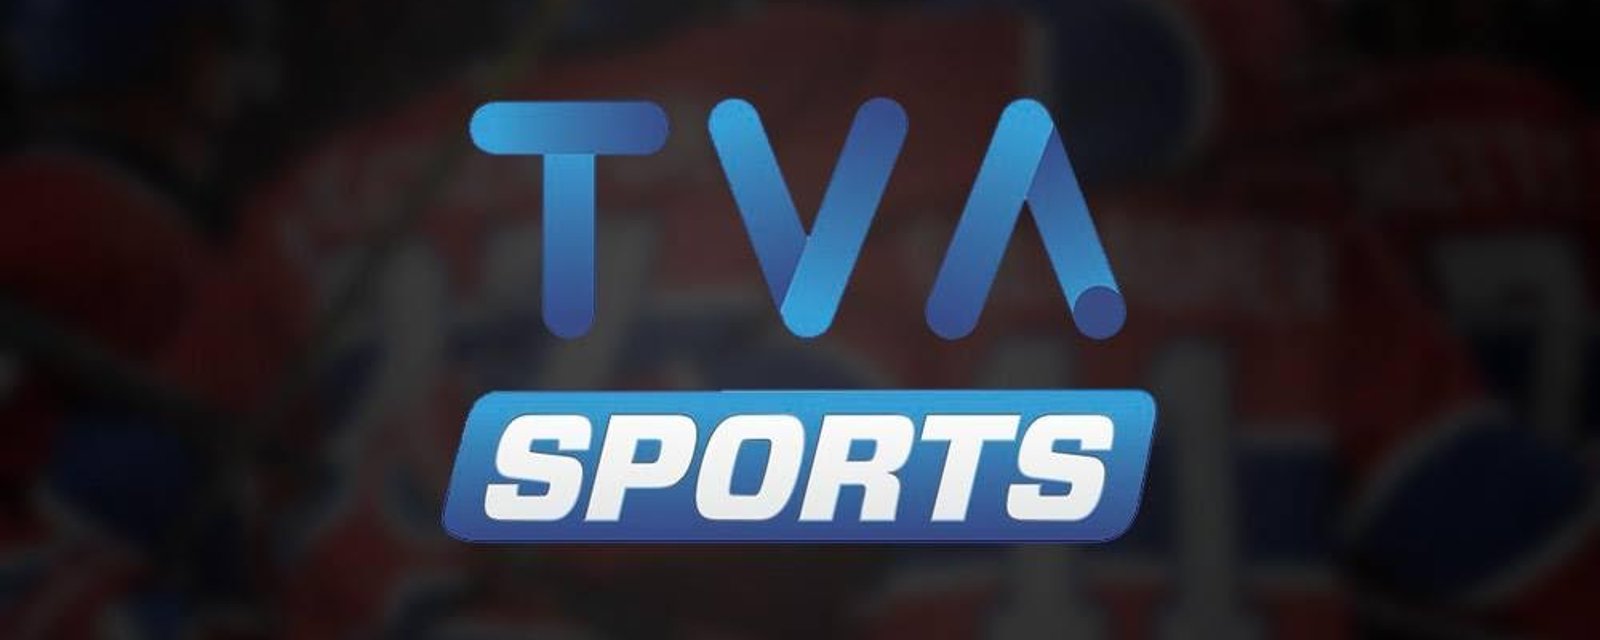 Une grosse nouveauté est annoncée chez TVA Sports! 